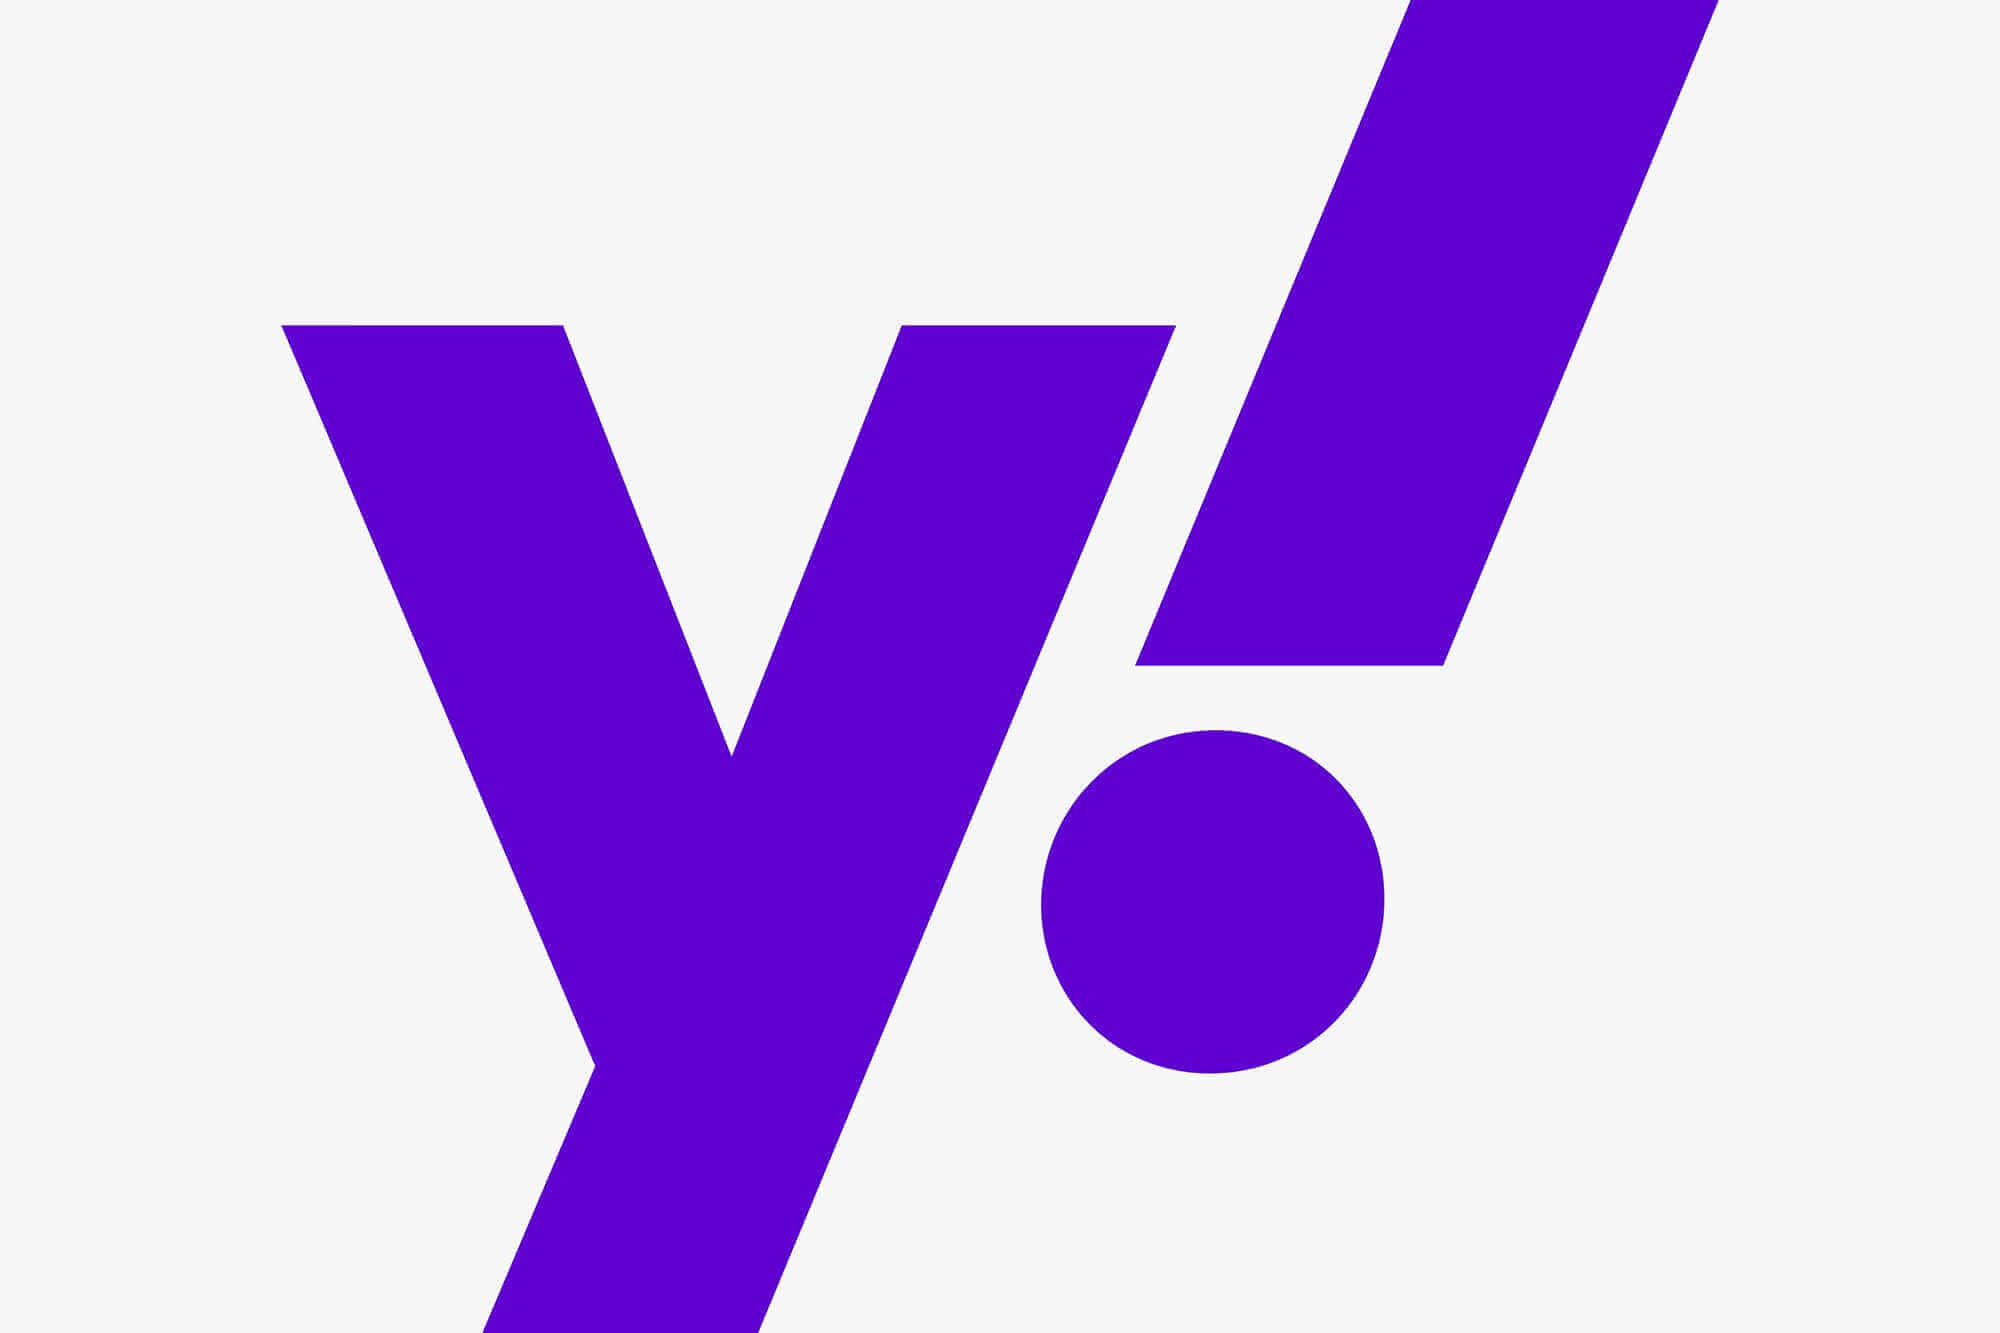 Nuevo logo yahoo 2019